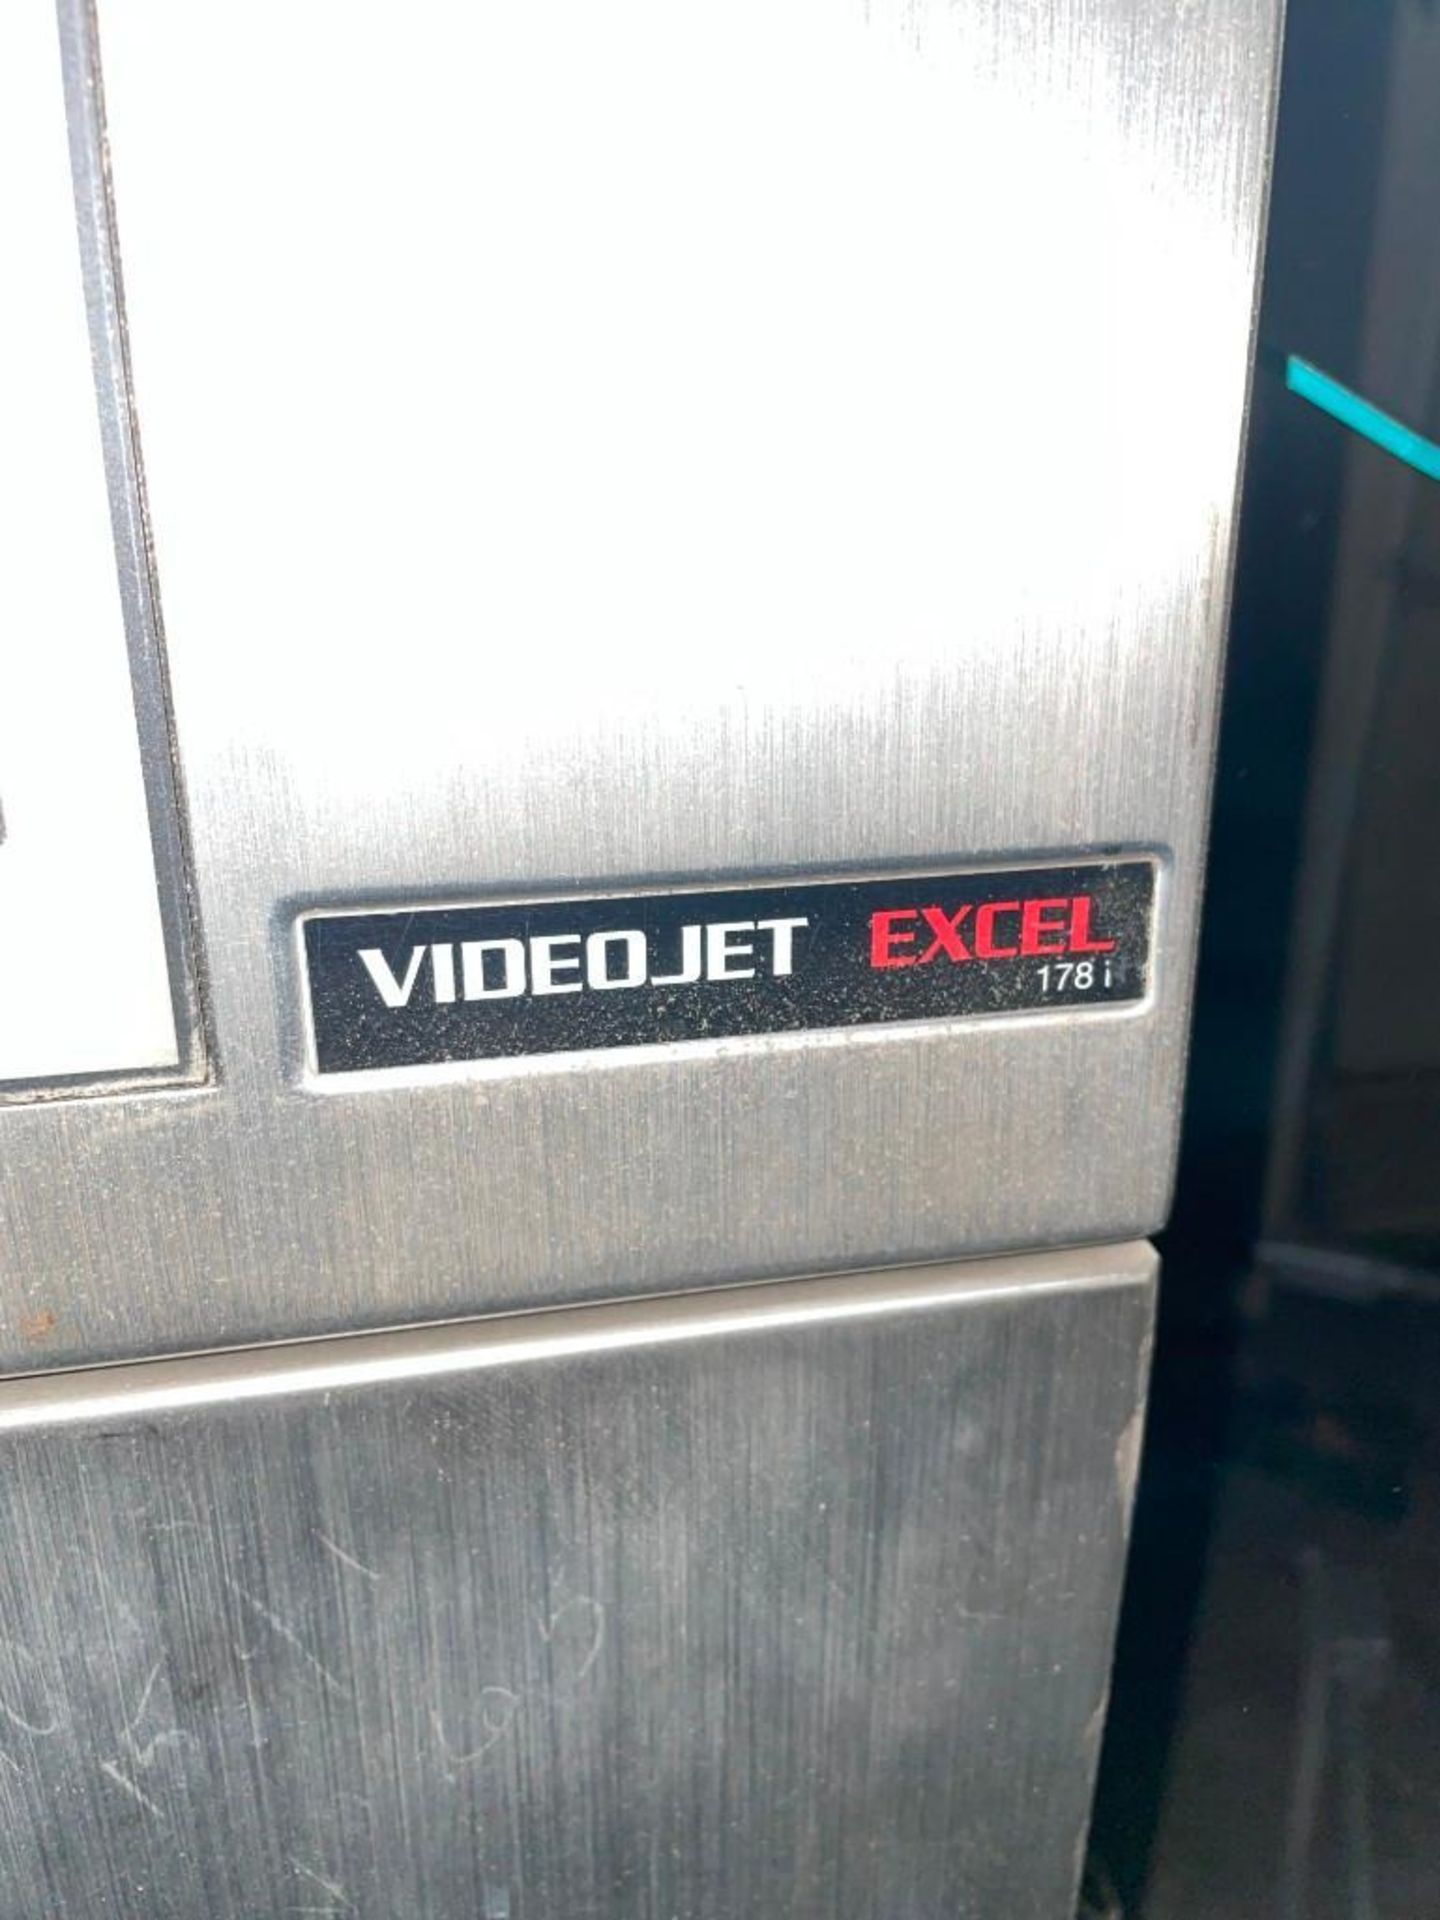 VideoJet Excel 178i Ink Jet Coder with Auto Flush - Image 3 of 5